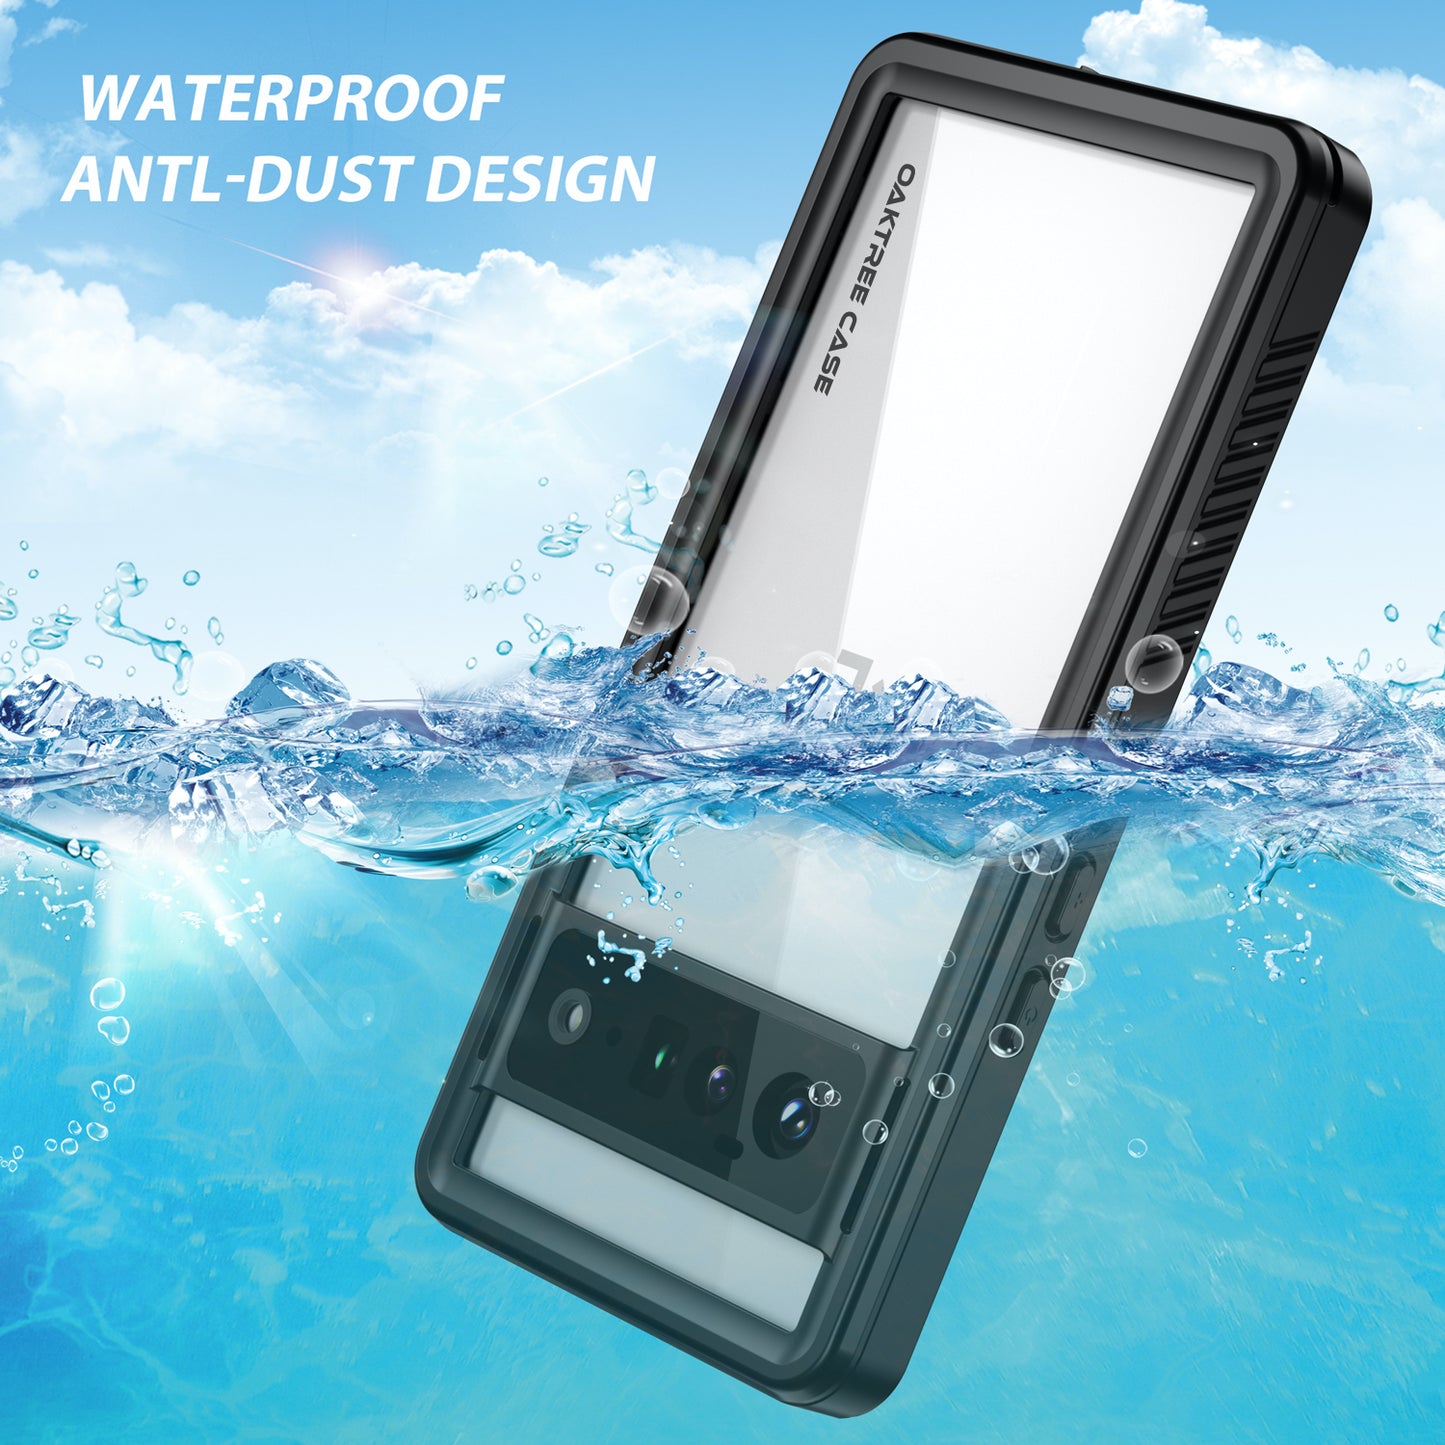 OAKTREE Google Pixel 6 Pro 6.7″ Shockproof Waterproof Full-Body Rugged Case - Black/Clear